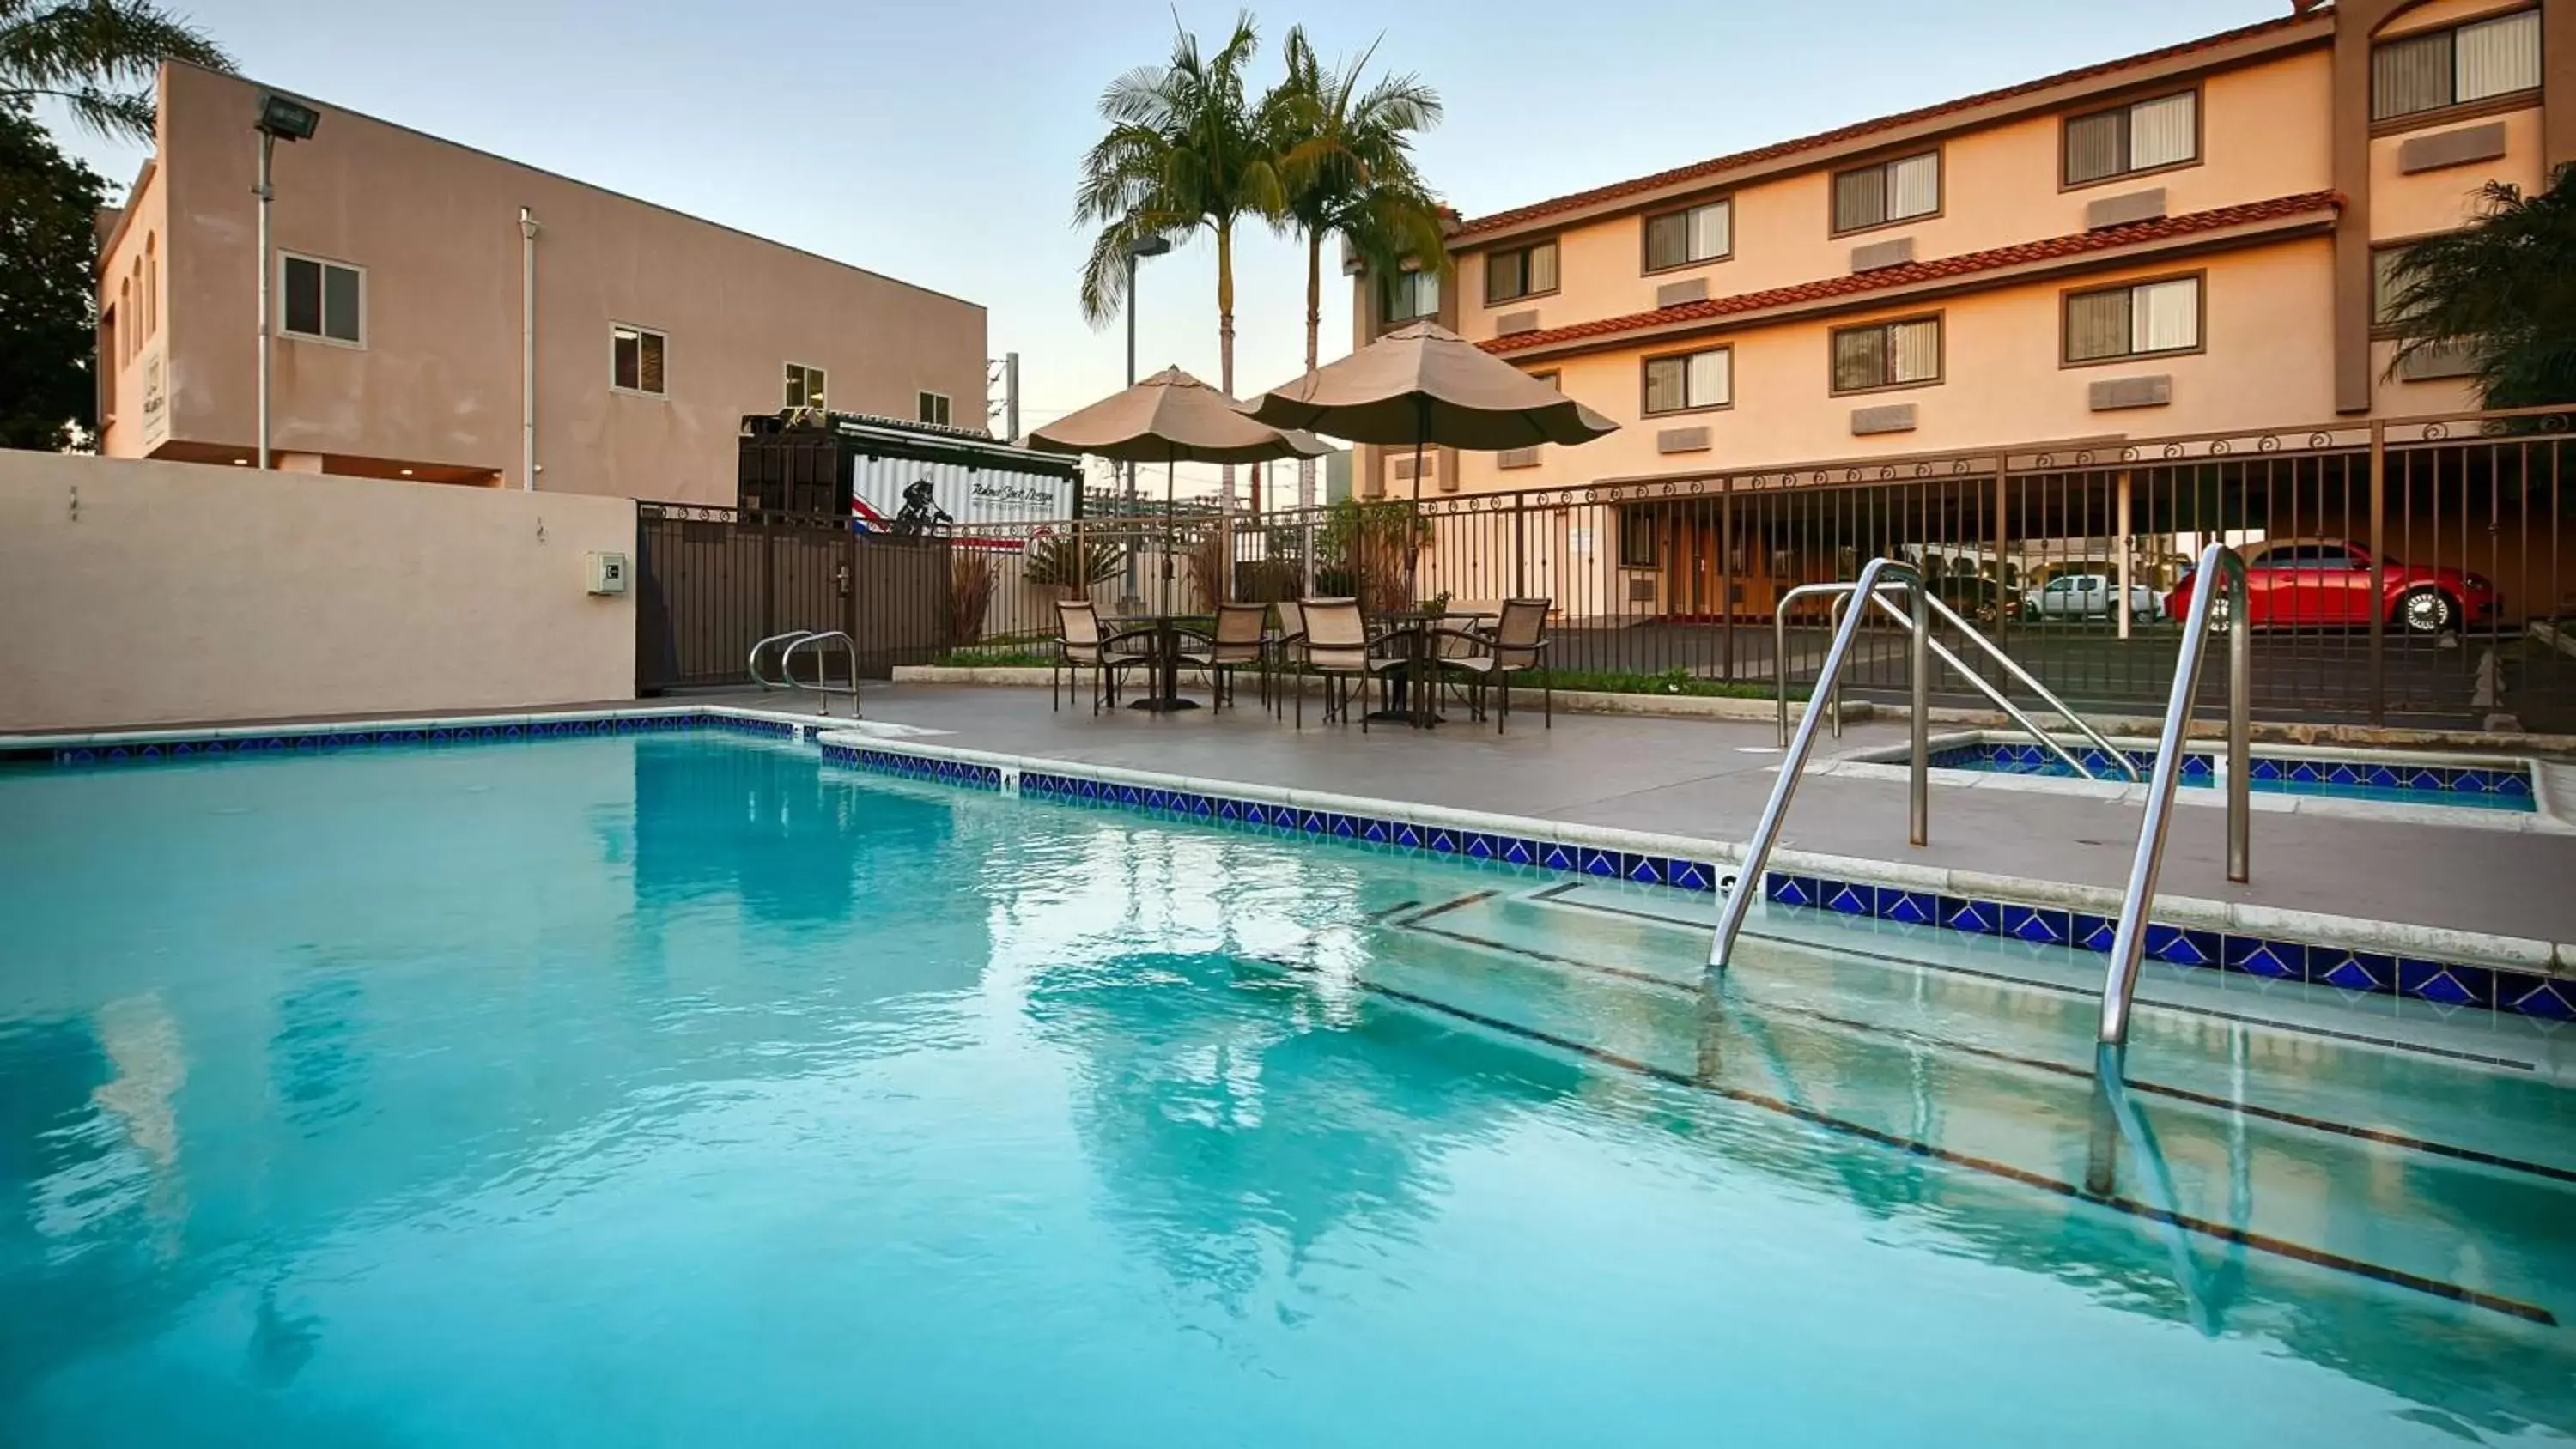 On site, Swimming Pool in Best Western Los Alamitos Inn & Suites